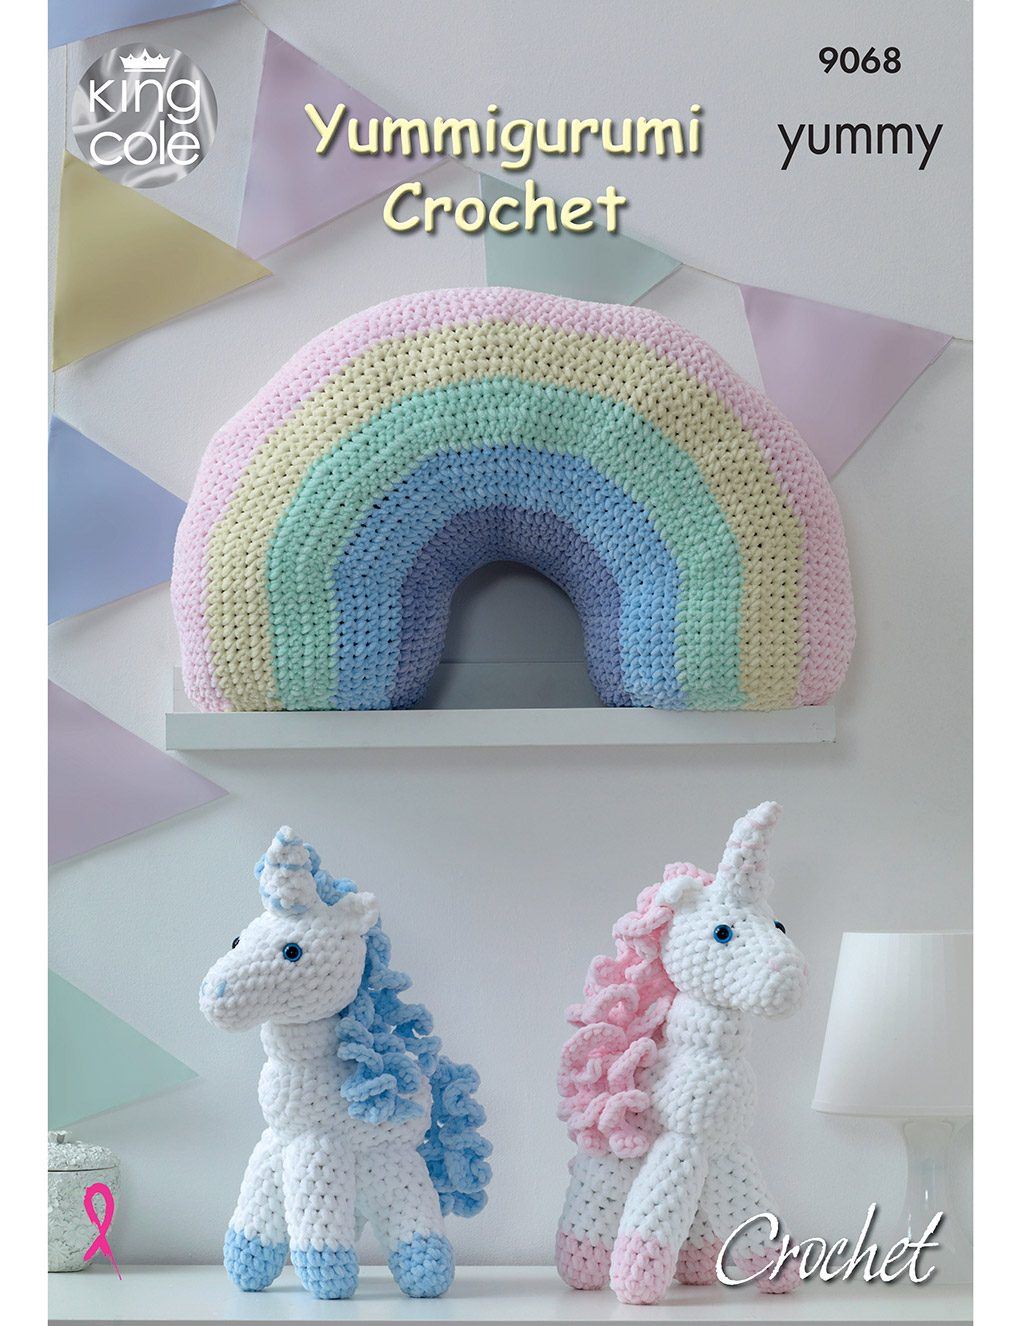 King Cole Yummy knitting pattern (9068) crochet unicorn and rainbow cushion